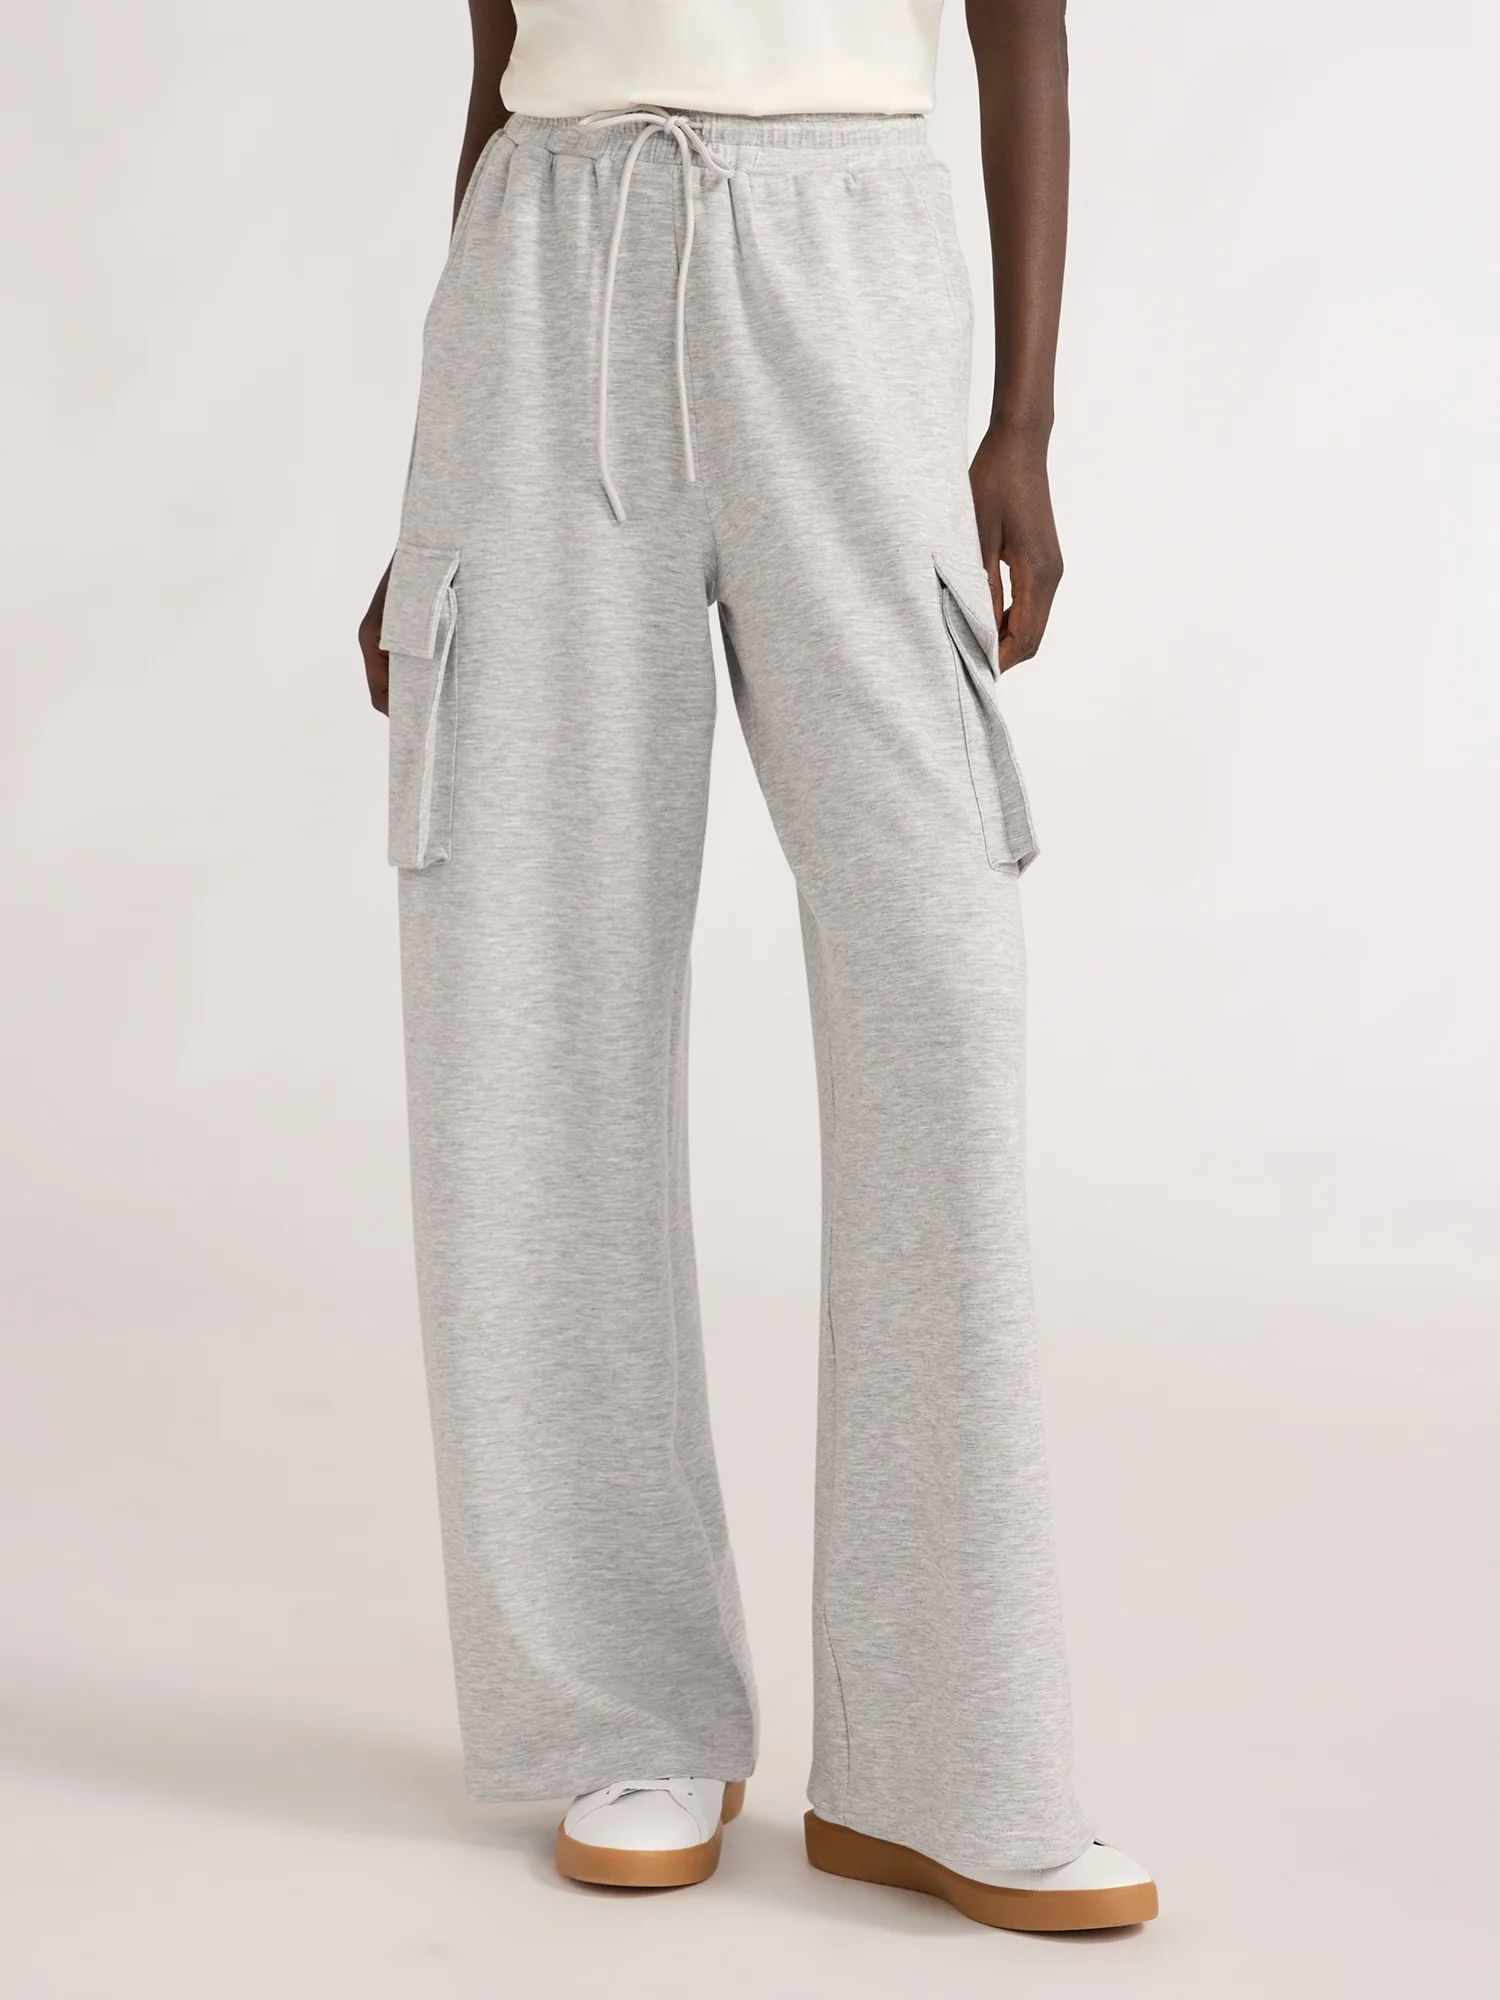 Scoop Women's Ultimate ScubaKnit Wide Leg Cargo Pants, Sizes XS-XXL | Walmart (US)